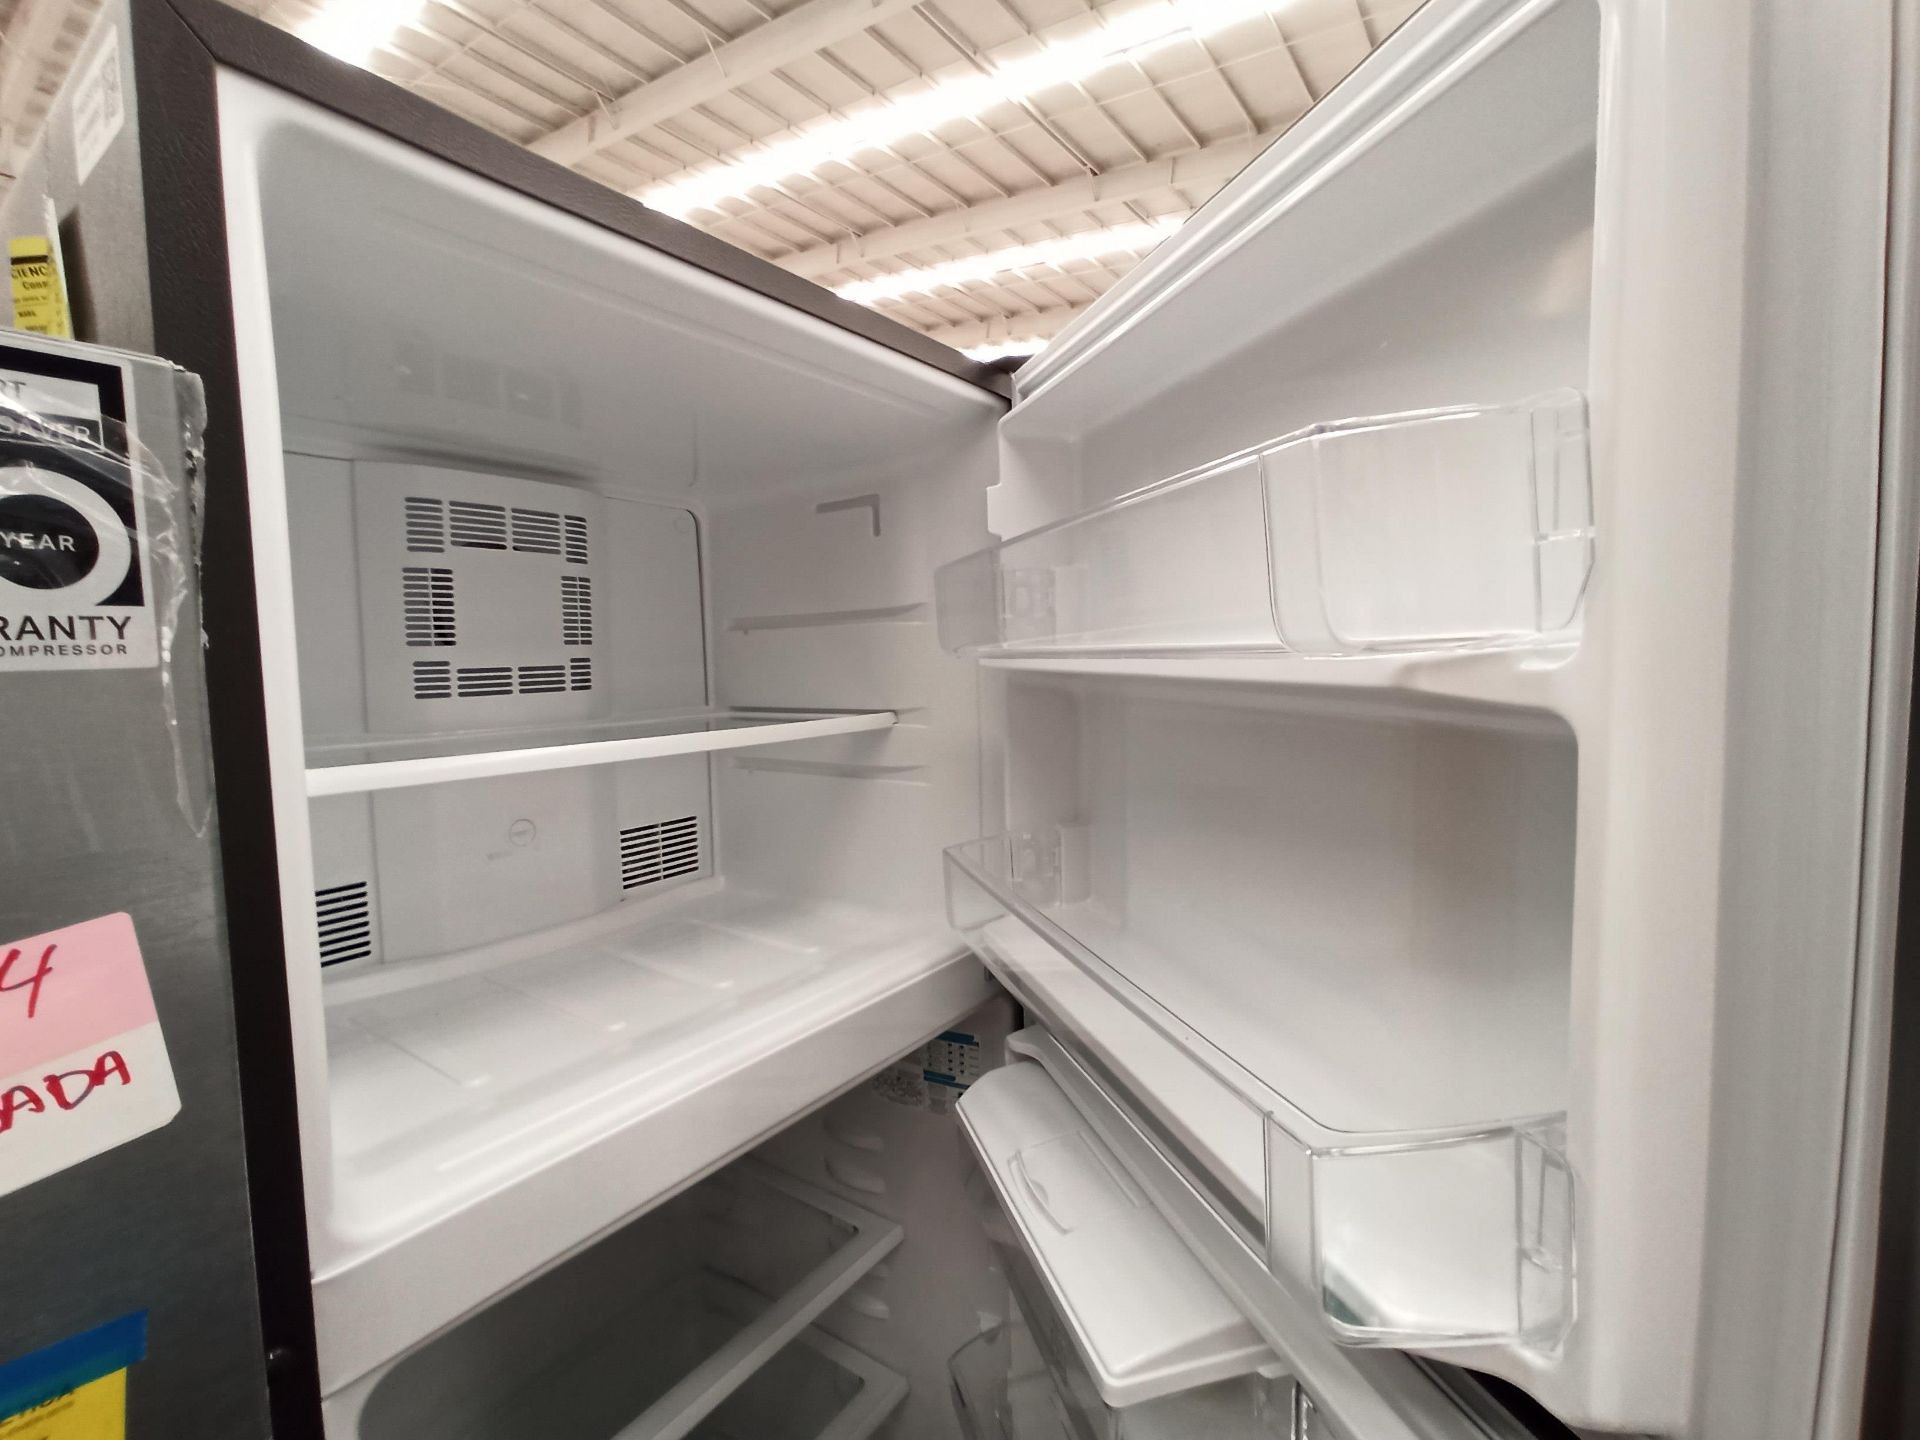 Lote de 2 refrigeradores contiene: 1 Refrigerador Marca WHIRLPOOL, Modelo WT1818A, Serie 878989, Co - Image 14 of 16